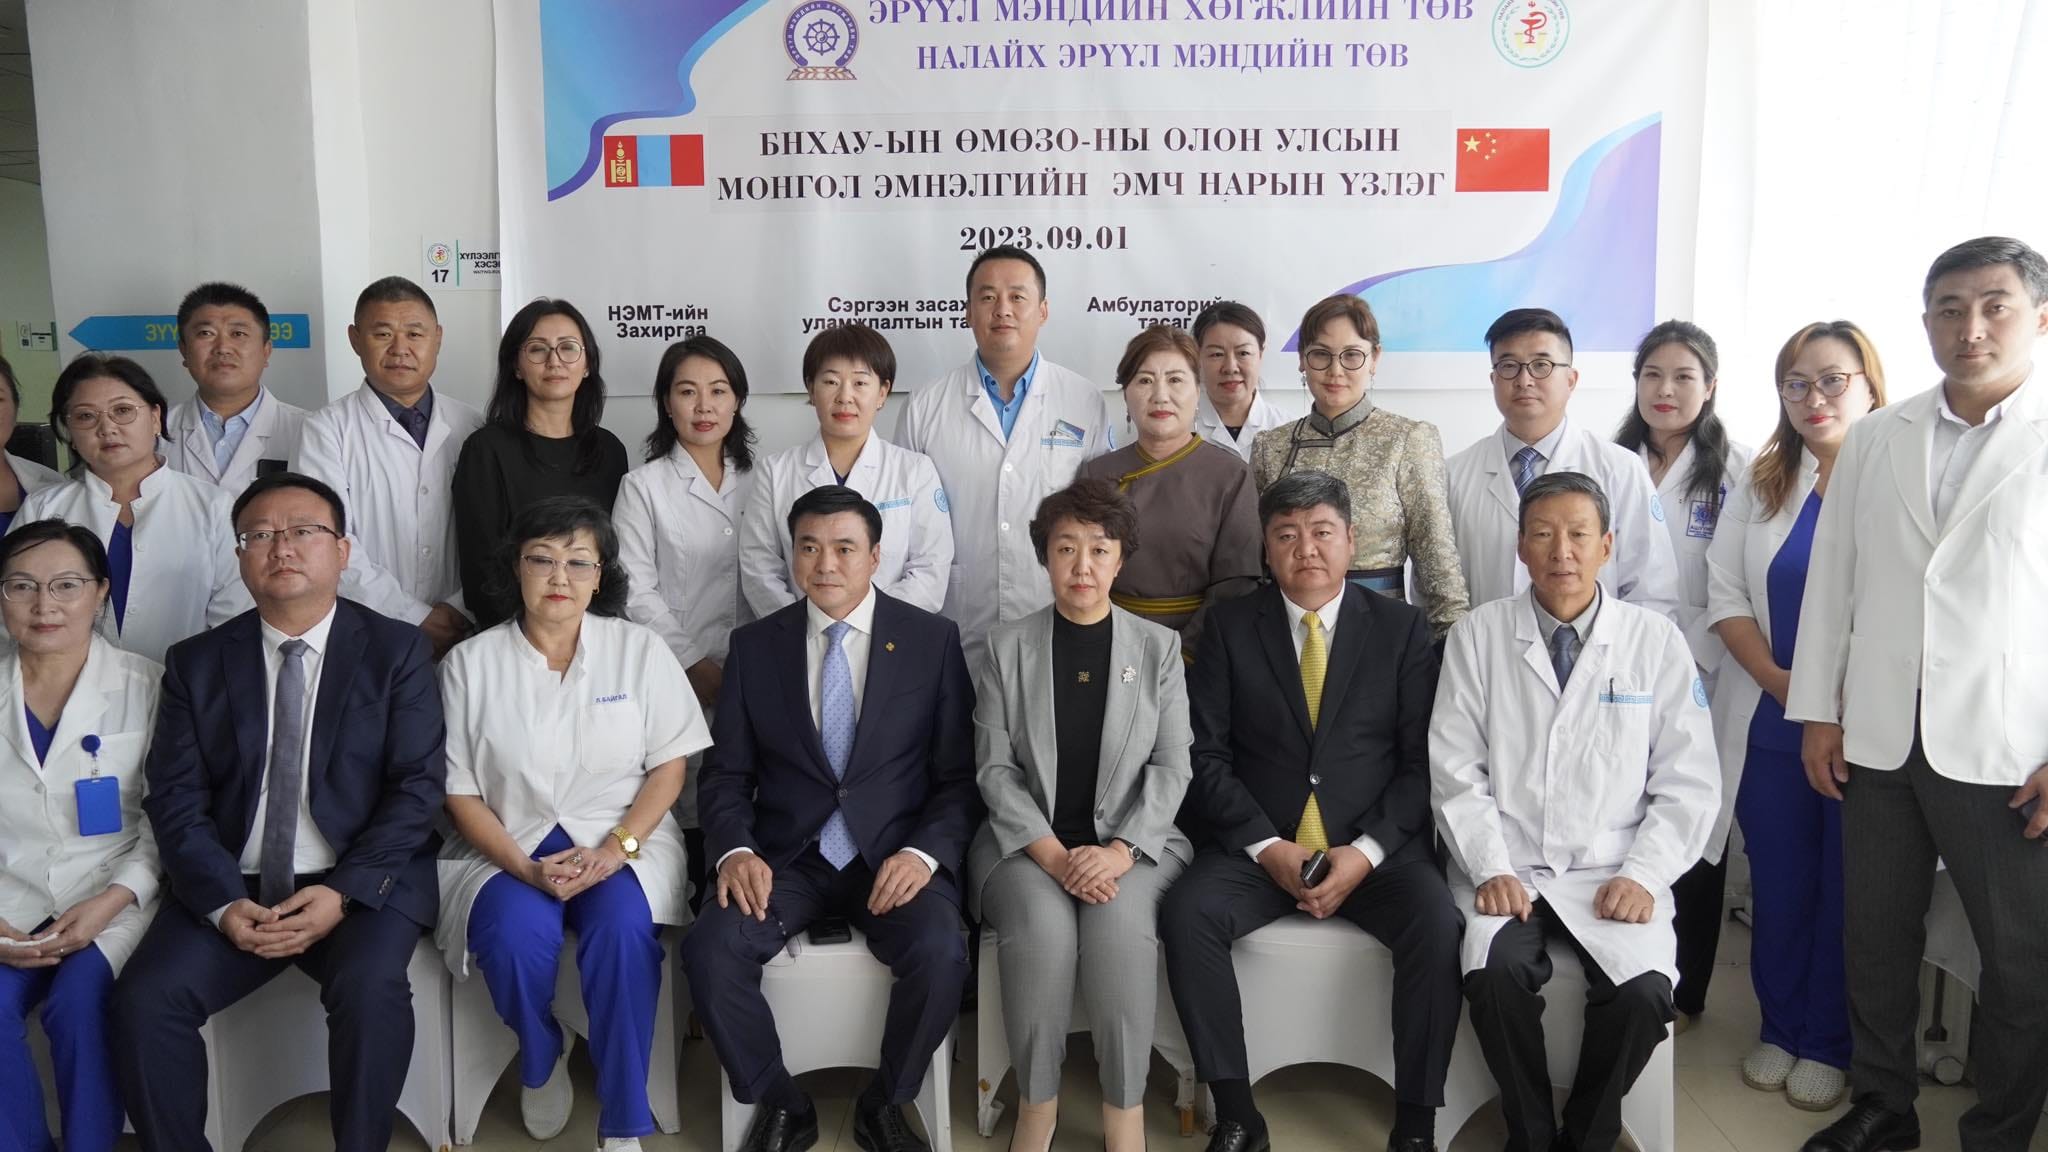 БНХАУ-ын ӨМӨЗО-ын Олон Улсын Монгол эмнэлгийн нарийн мэргэжлийн 9 эмч Налайх дүүргийн иргэдэд үйлчиллээ